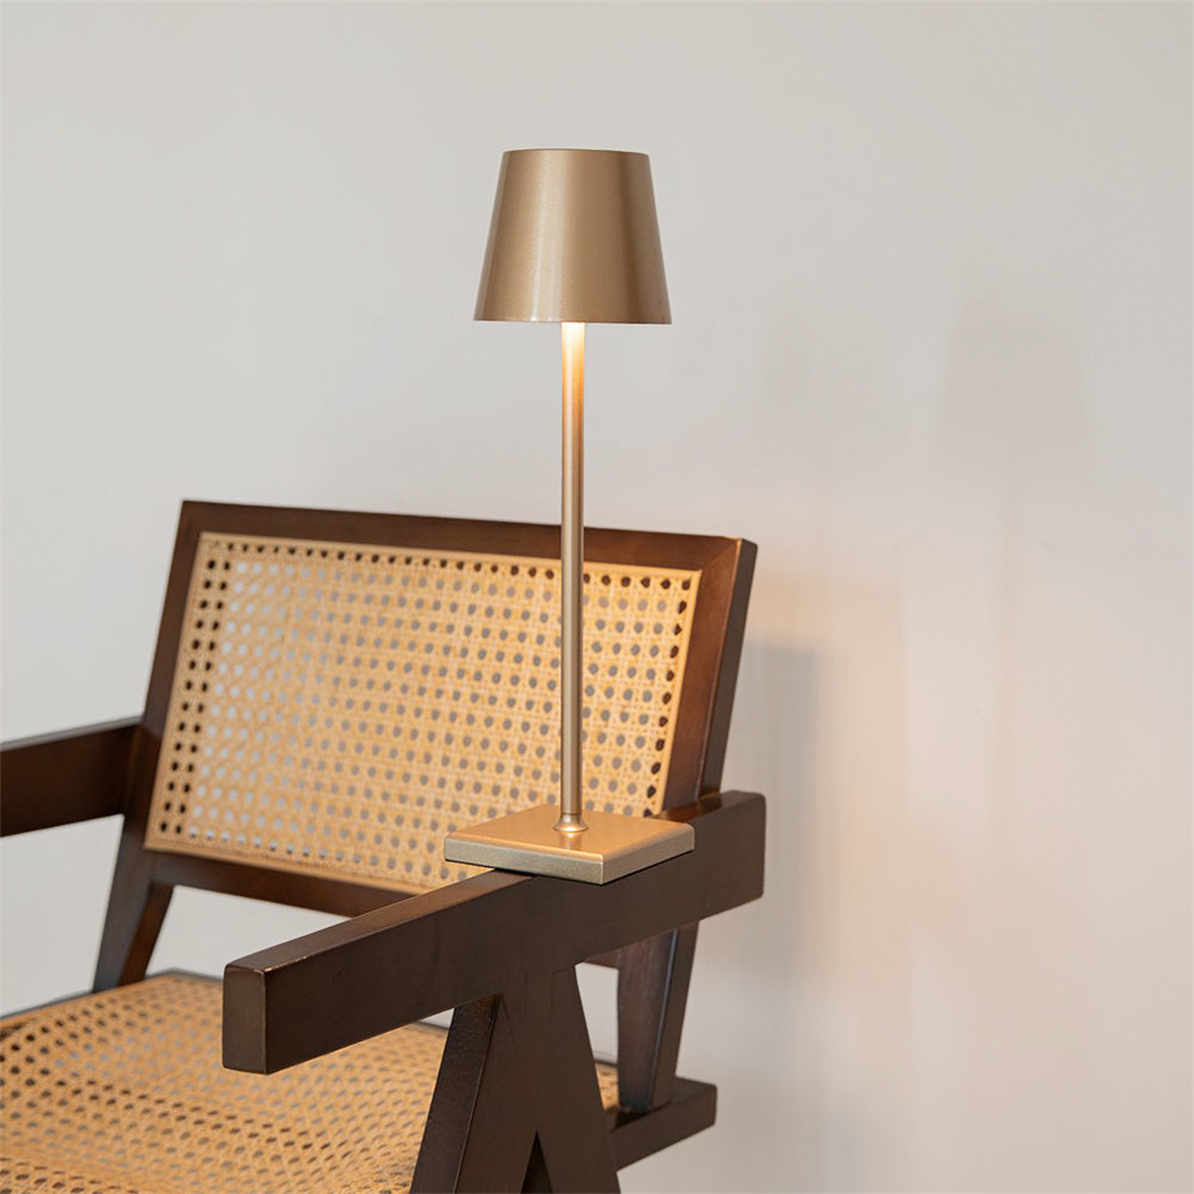 Ilumi | Tischleuchte mit Touch-Steuerung - - Außenlampen Tischlampen Tragbare Lampen - Concept Frankfurt